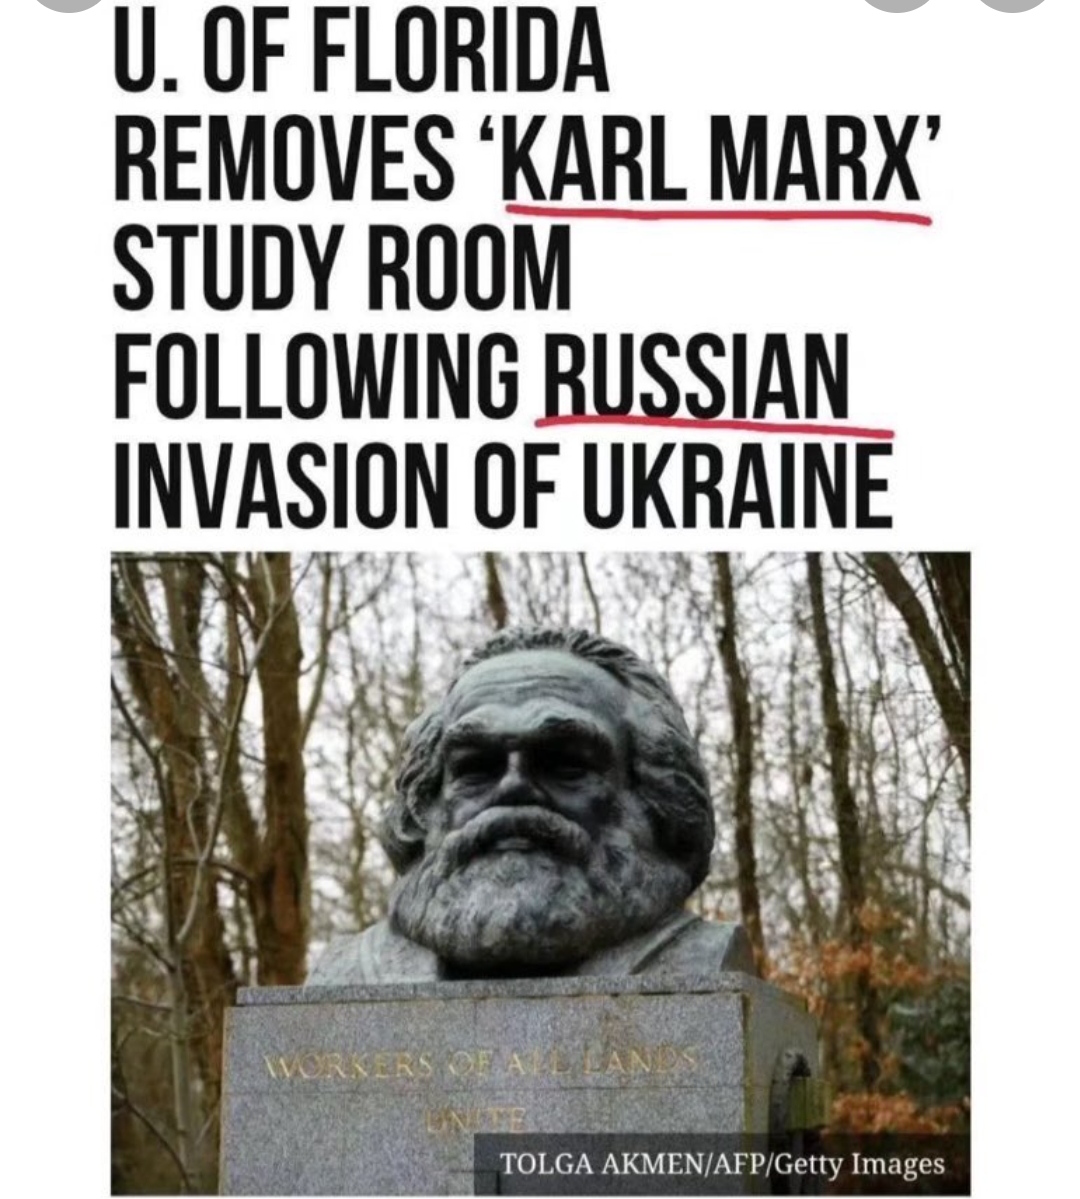 L’Università della Florida accusa Marx dell’invasione dell’Ucraina